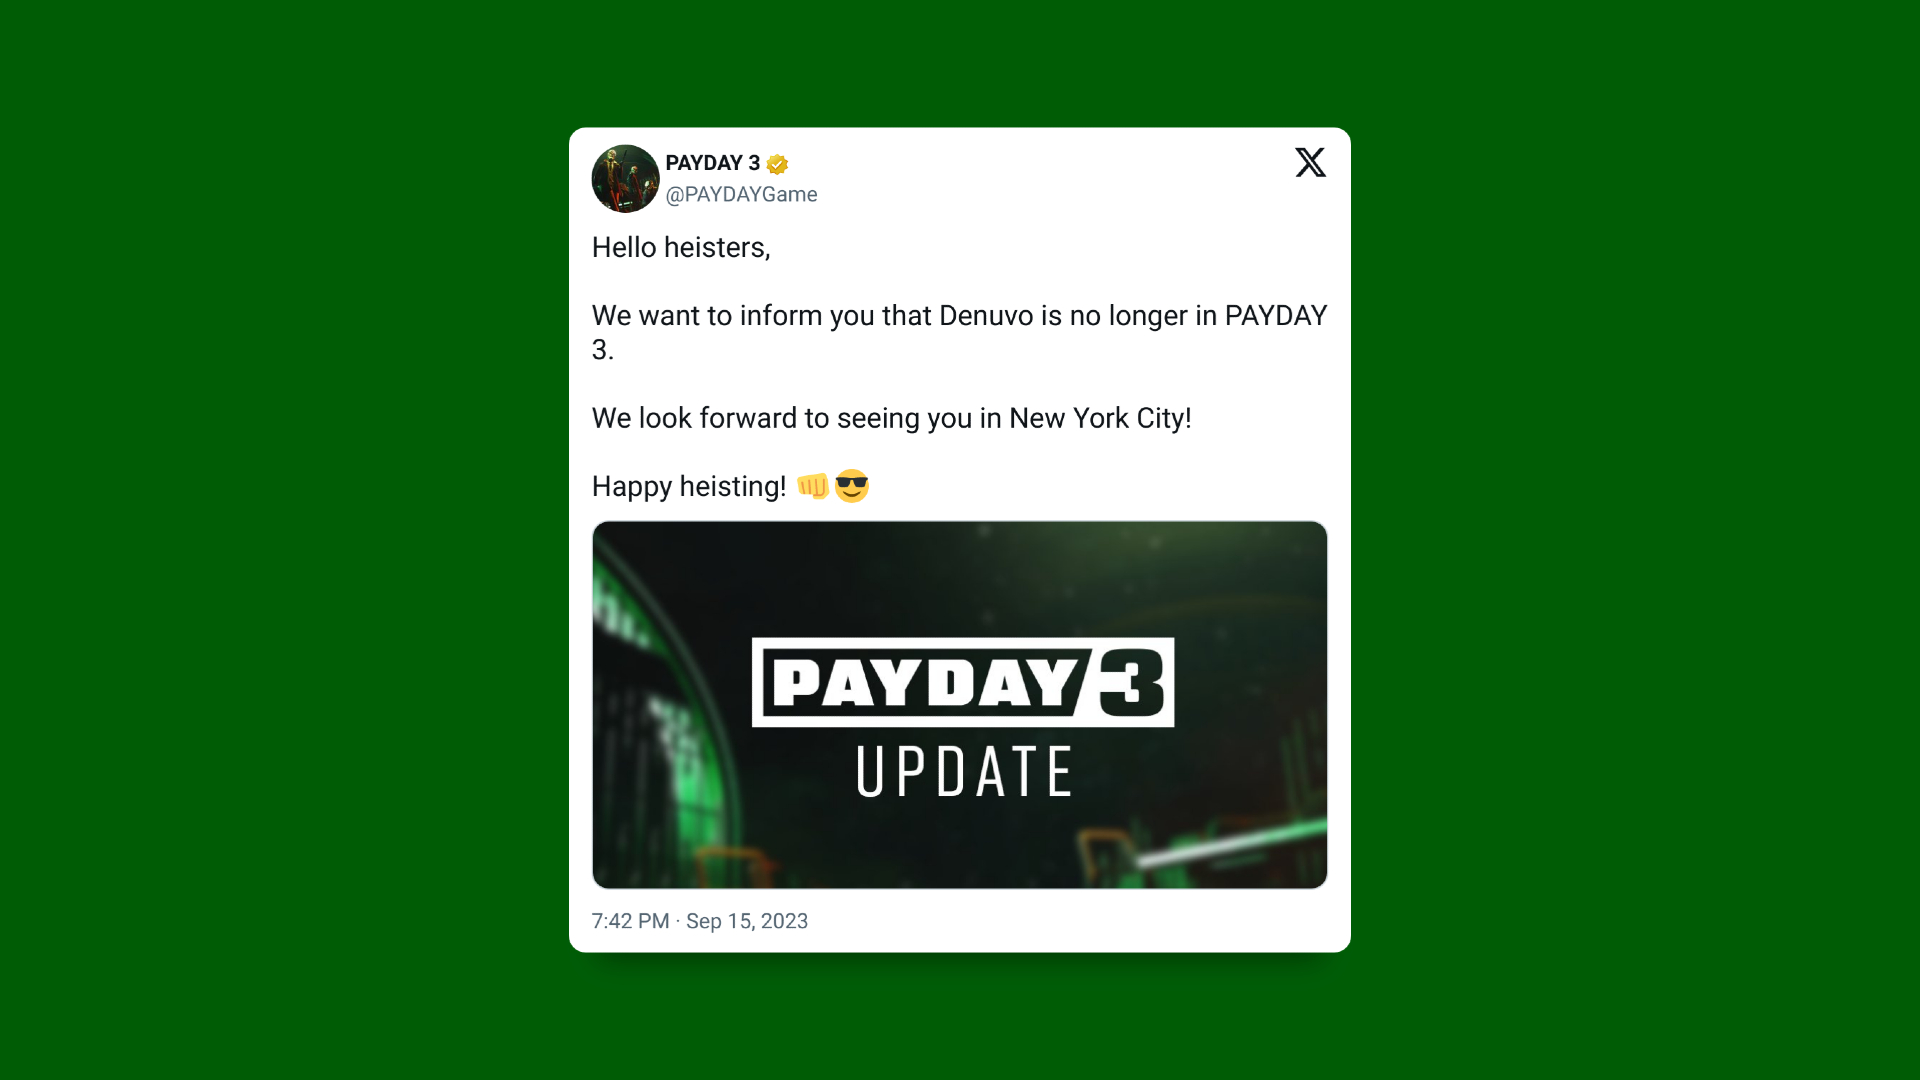 Der Twitter-Beitrag „Payday 3“ enthüllt, dass Denuvo aus dem Spiel entfernt wurde